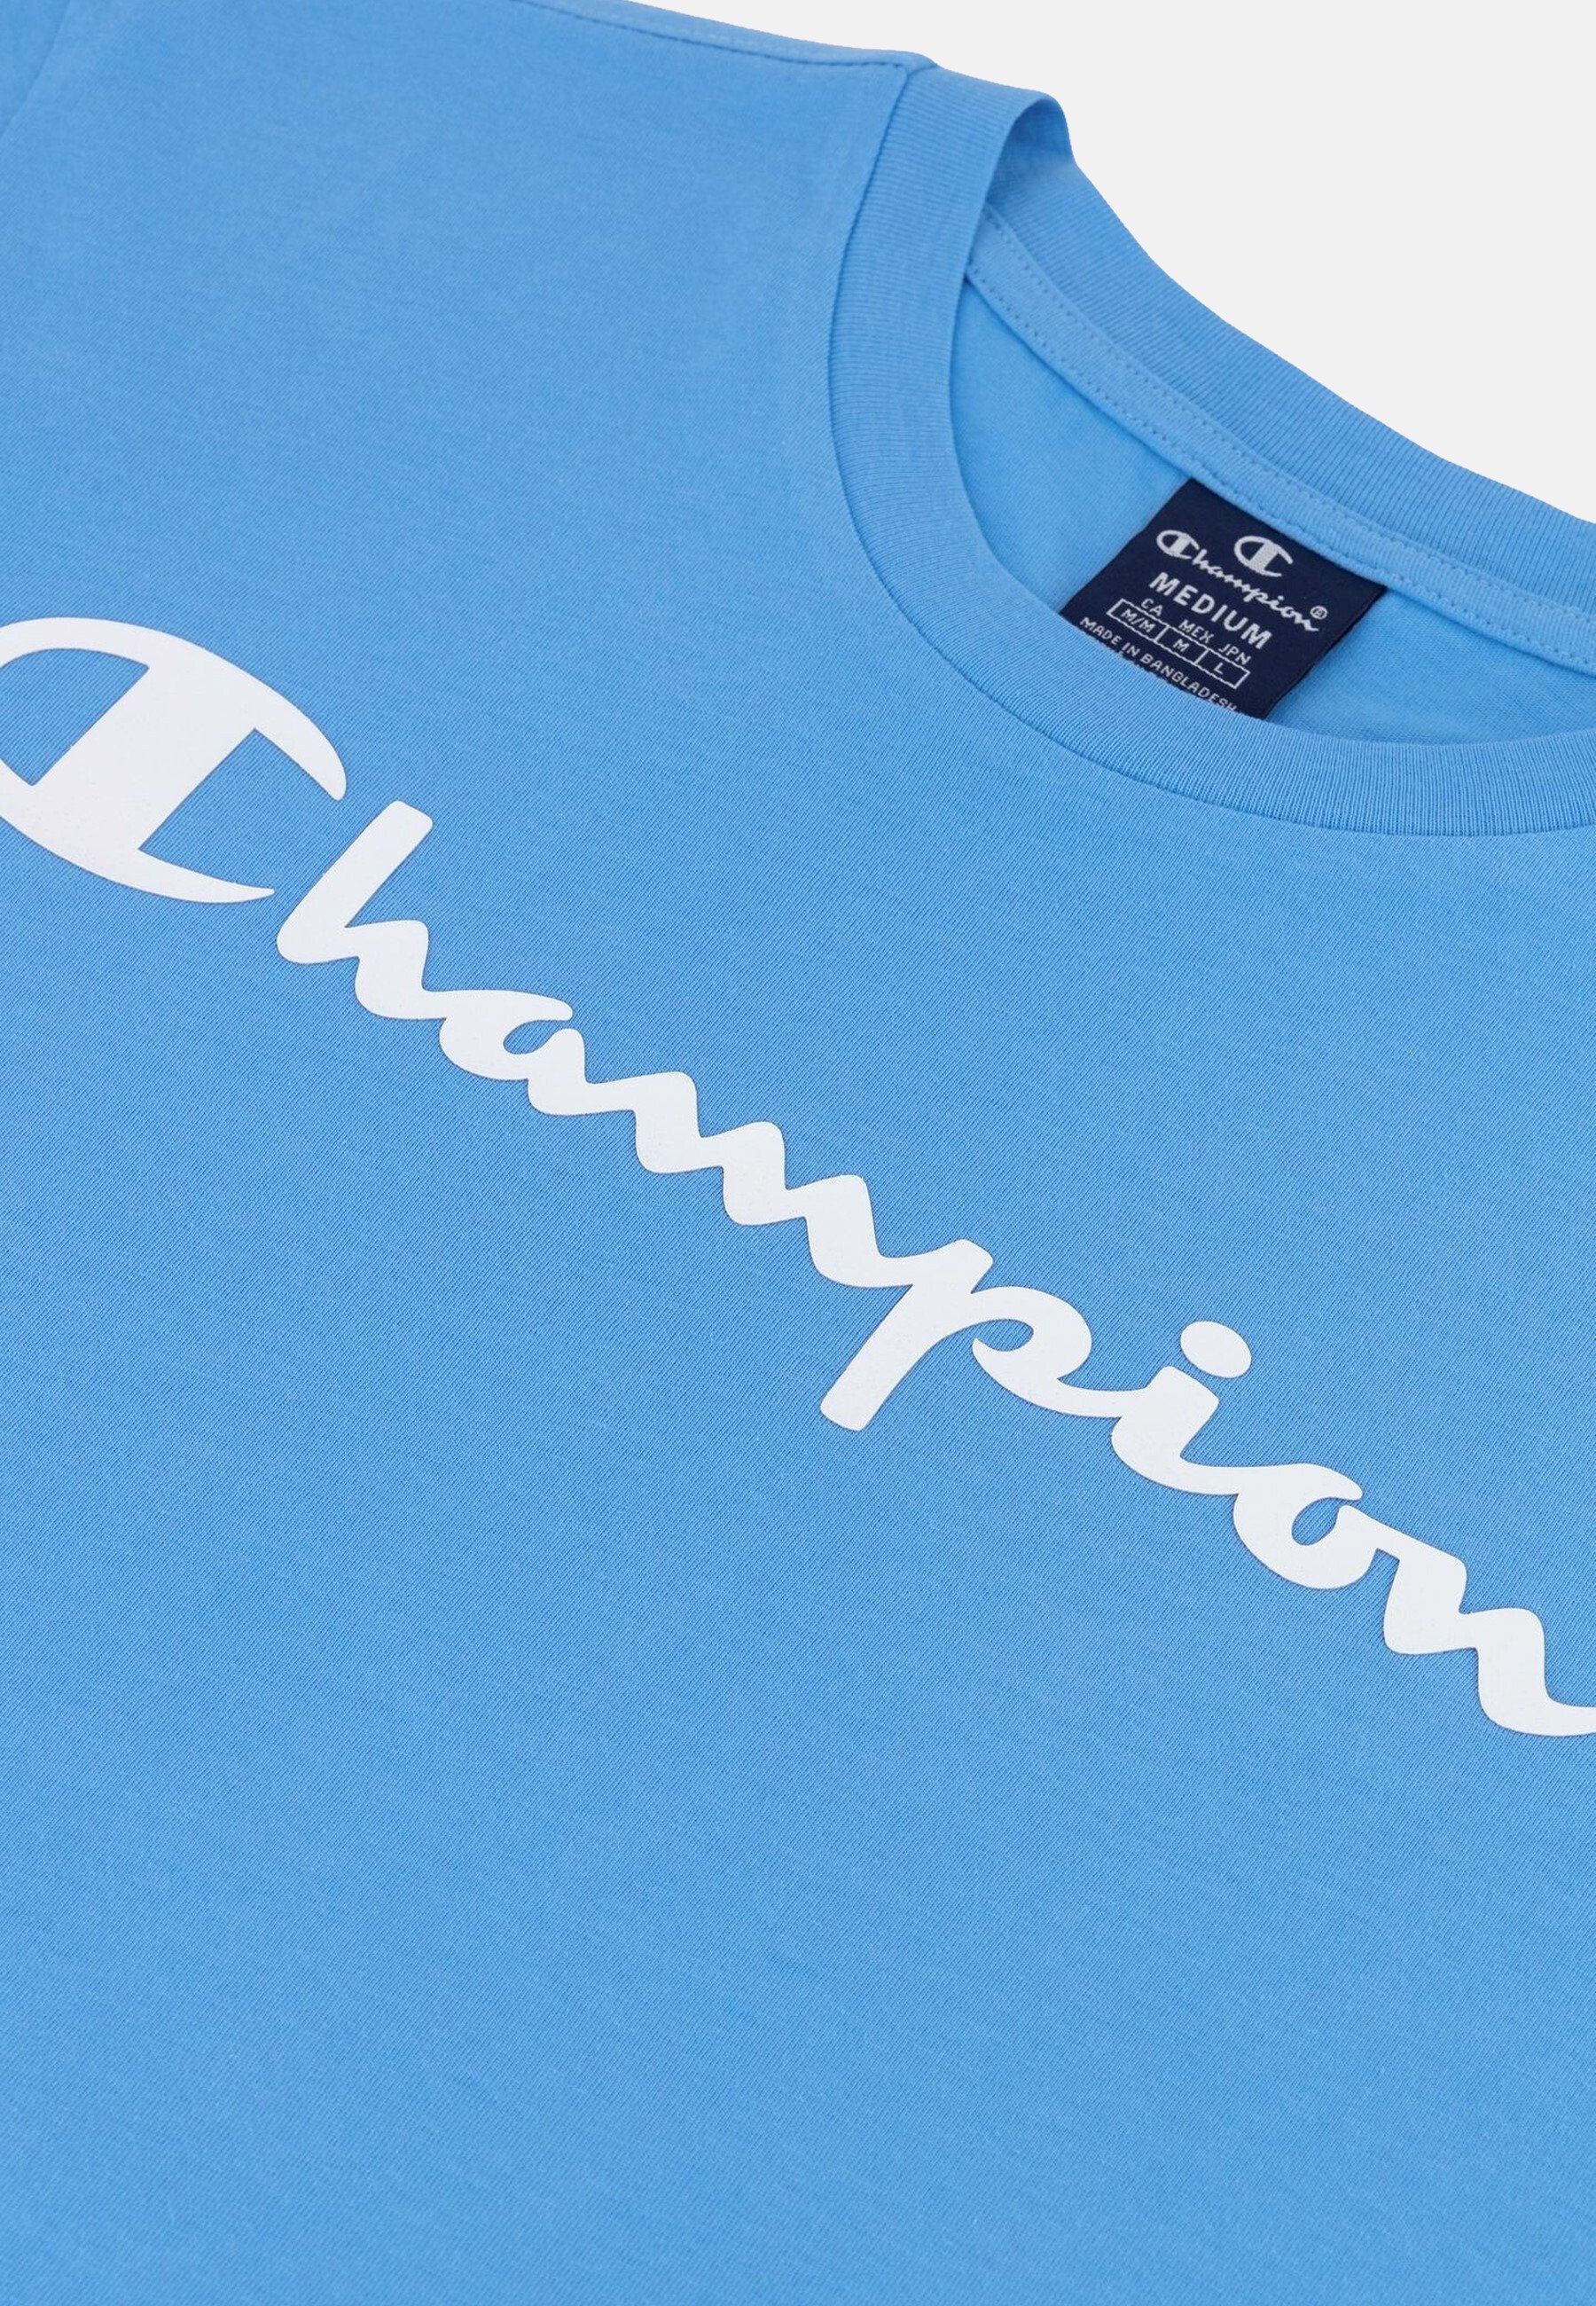 Baumwolle mit Shirt Rundhals-T-Shirt aus hellblau T-Shirt Champion